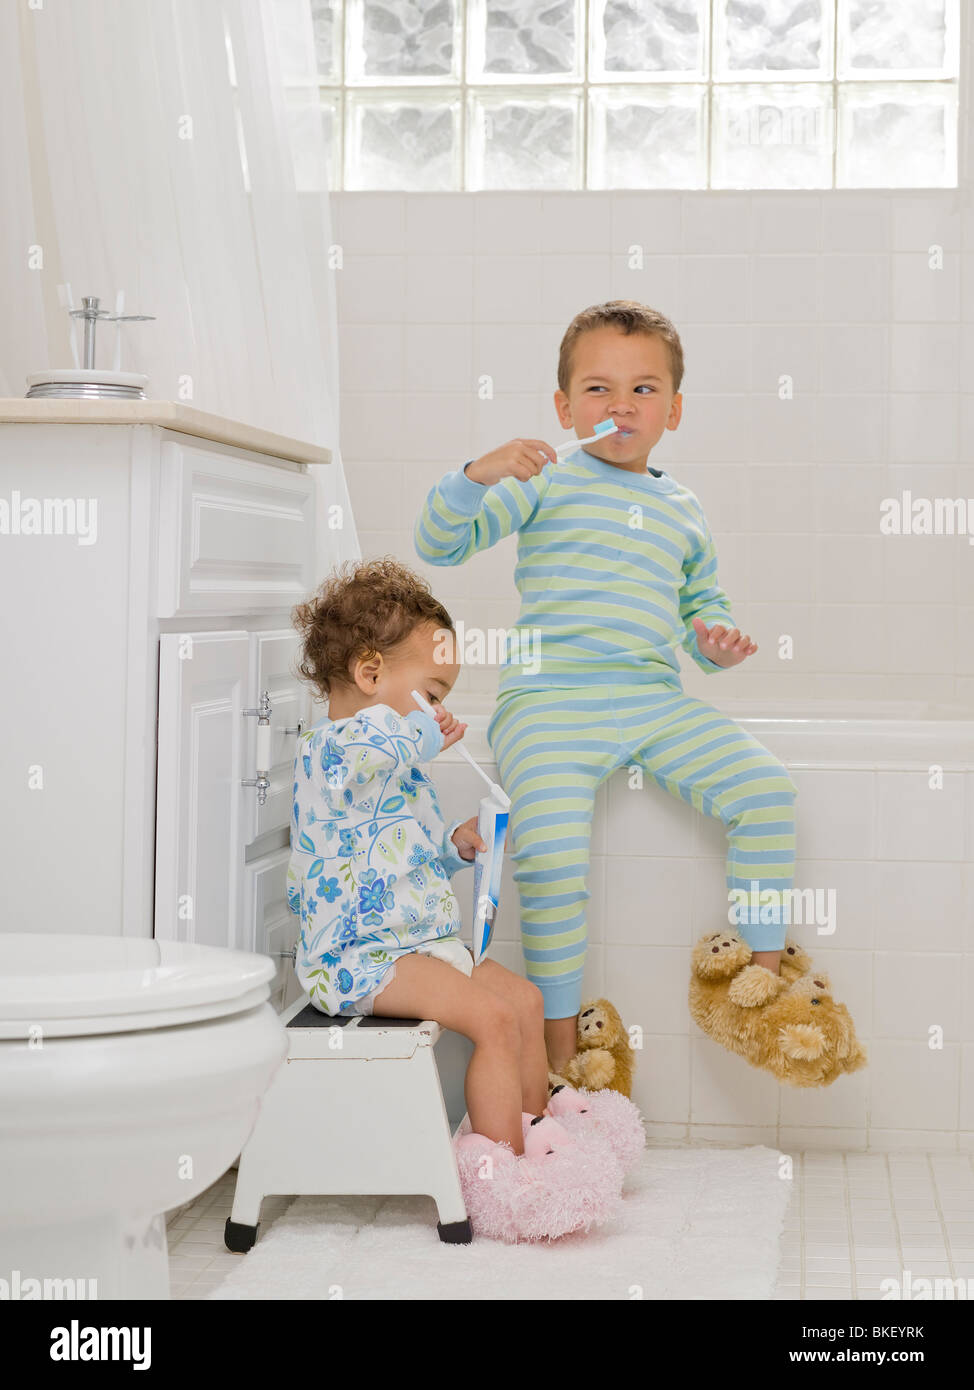 Frère et soeur dans la salle de bain se brosser les dents Photo Stock -  Alamy